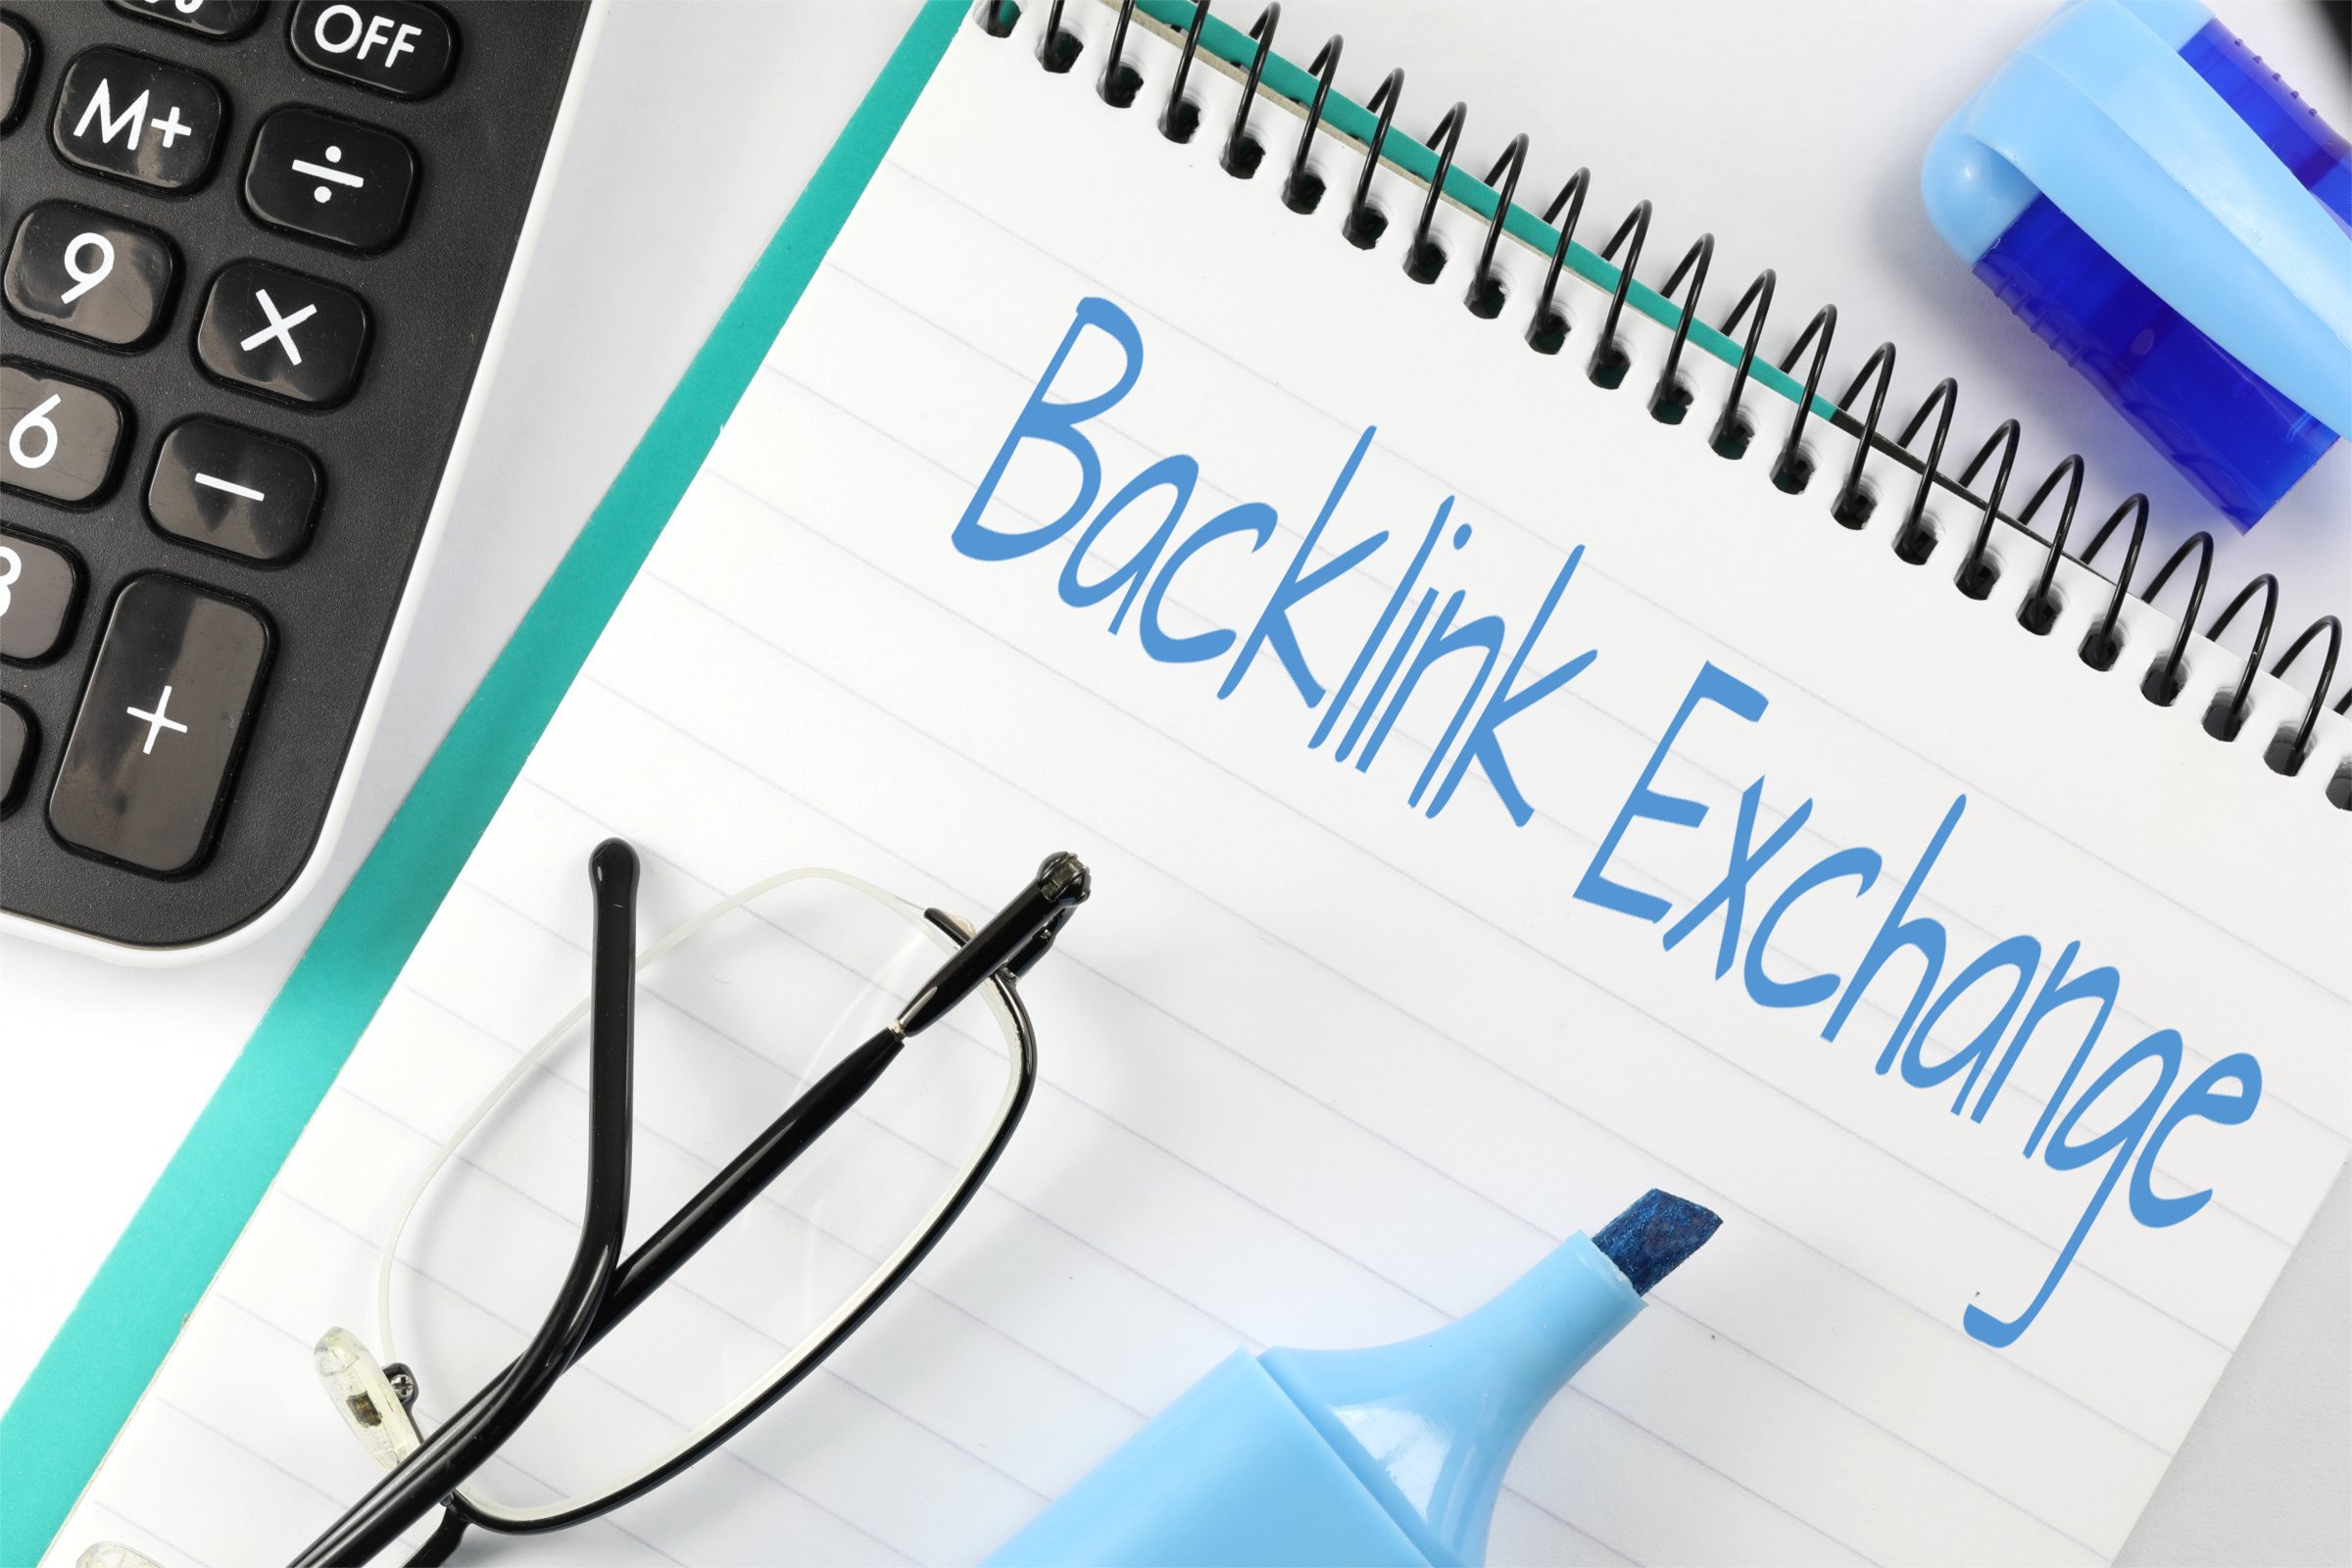 backlink exchange